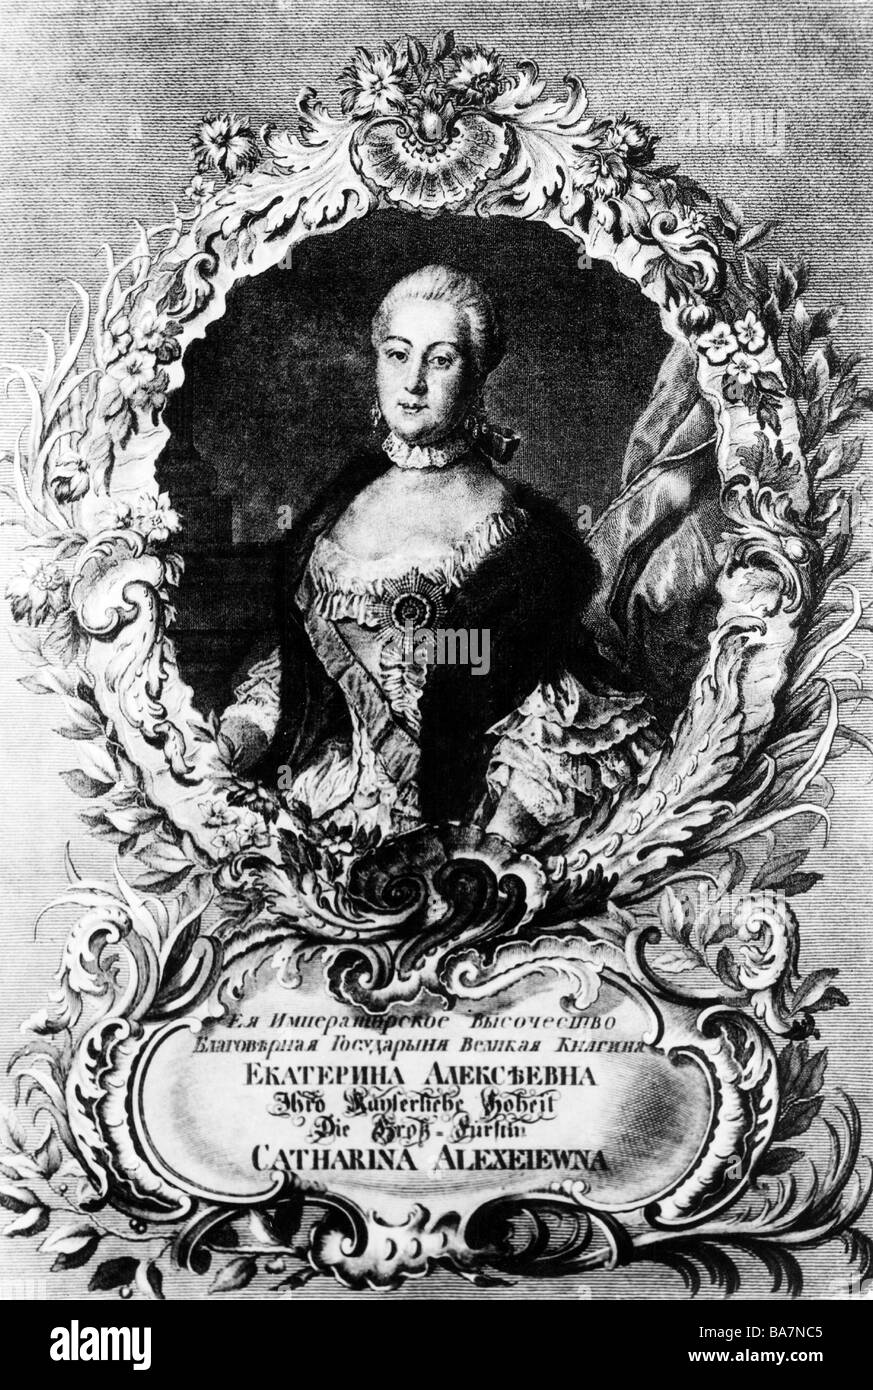 Catherine II "grandi", 2.5.1729 - 17.11.1796, imperatrice di Russia 1762 - 1796, a mezza lunghezza e incisione su rame, circa 1750, artista del diritto d'autore non deve essere cancellata Foto Stock